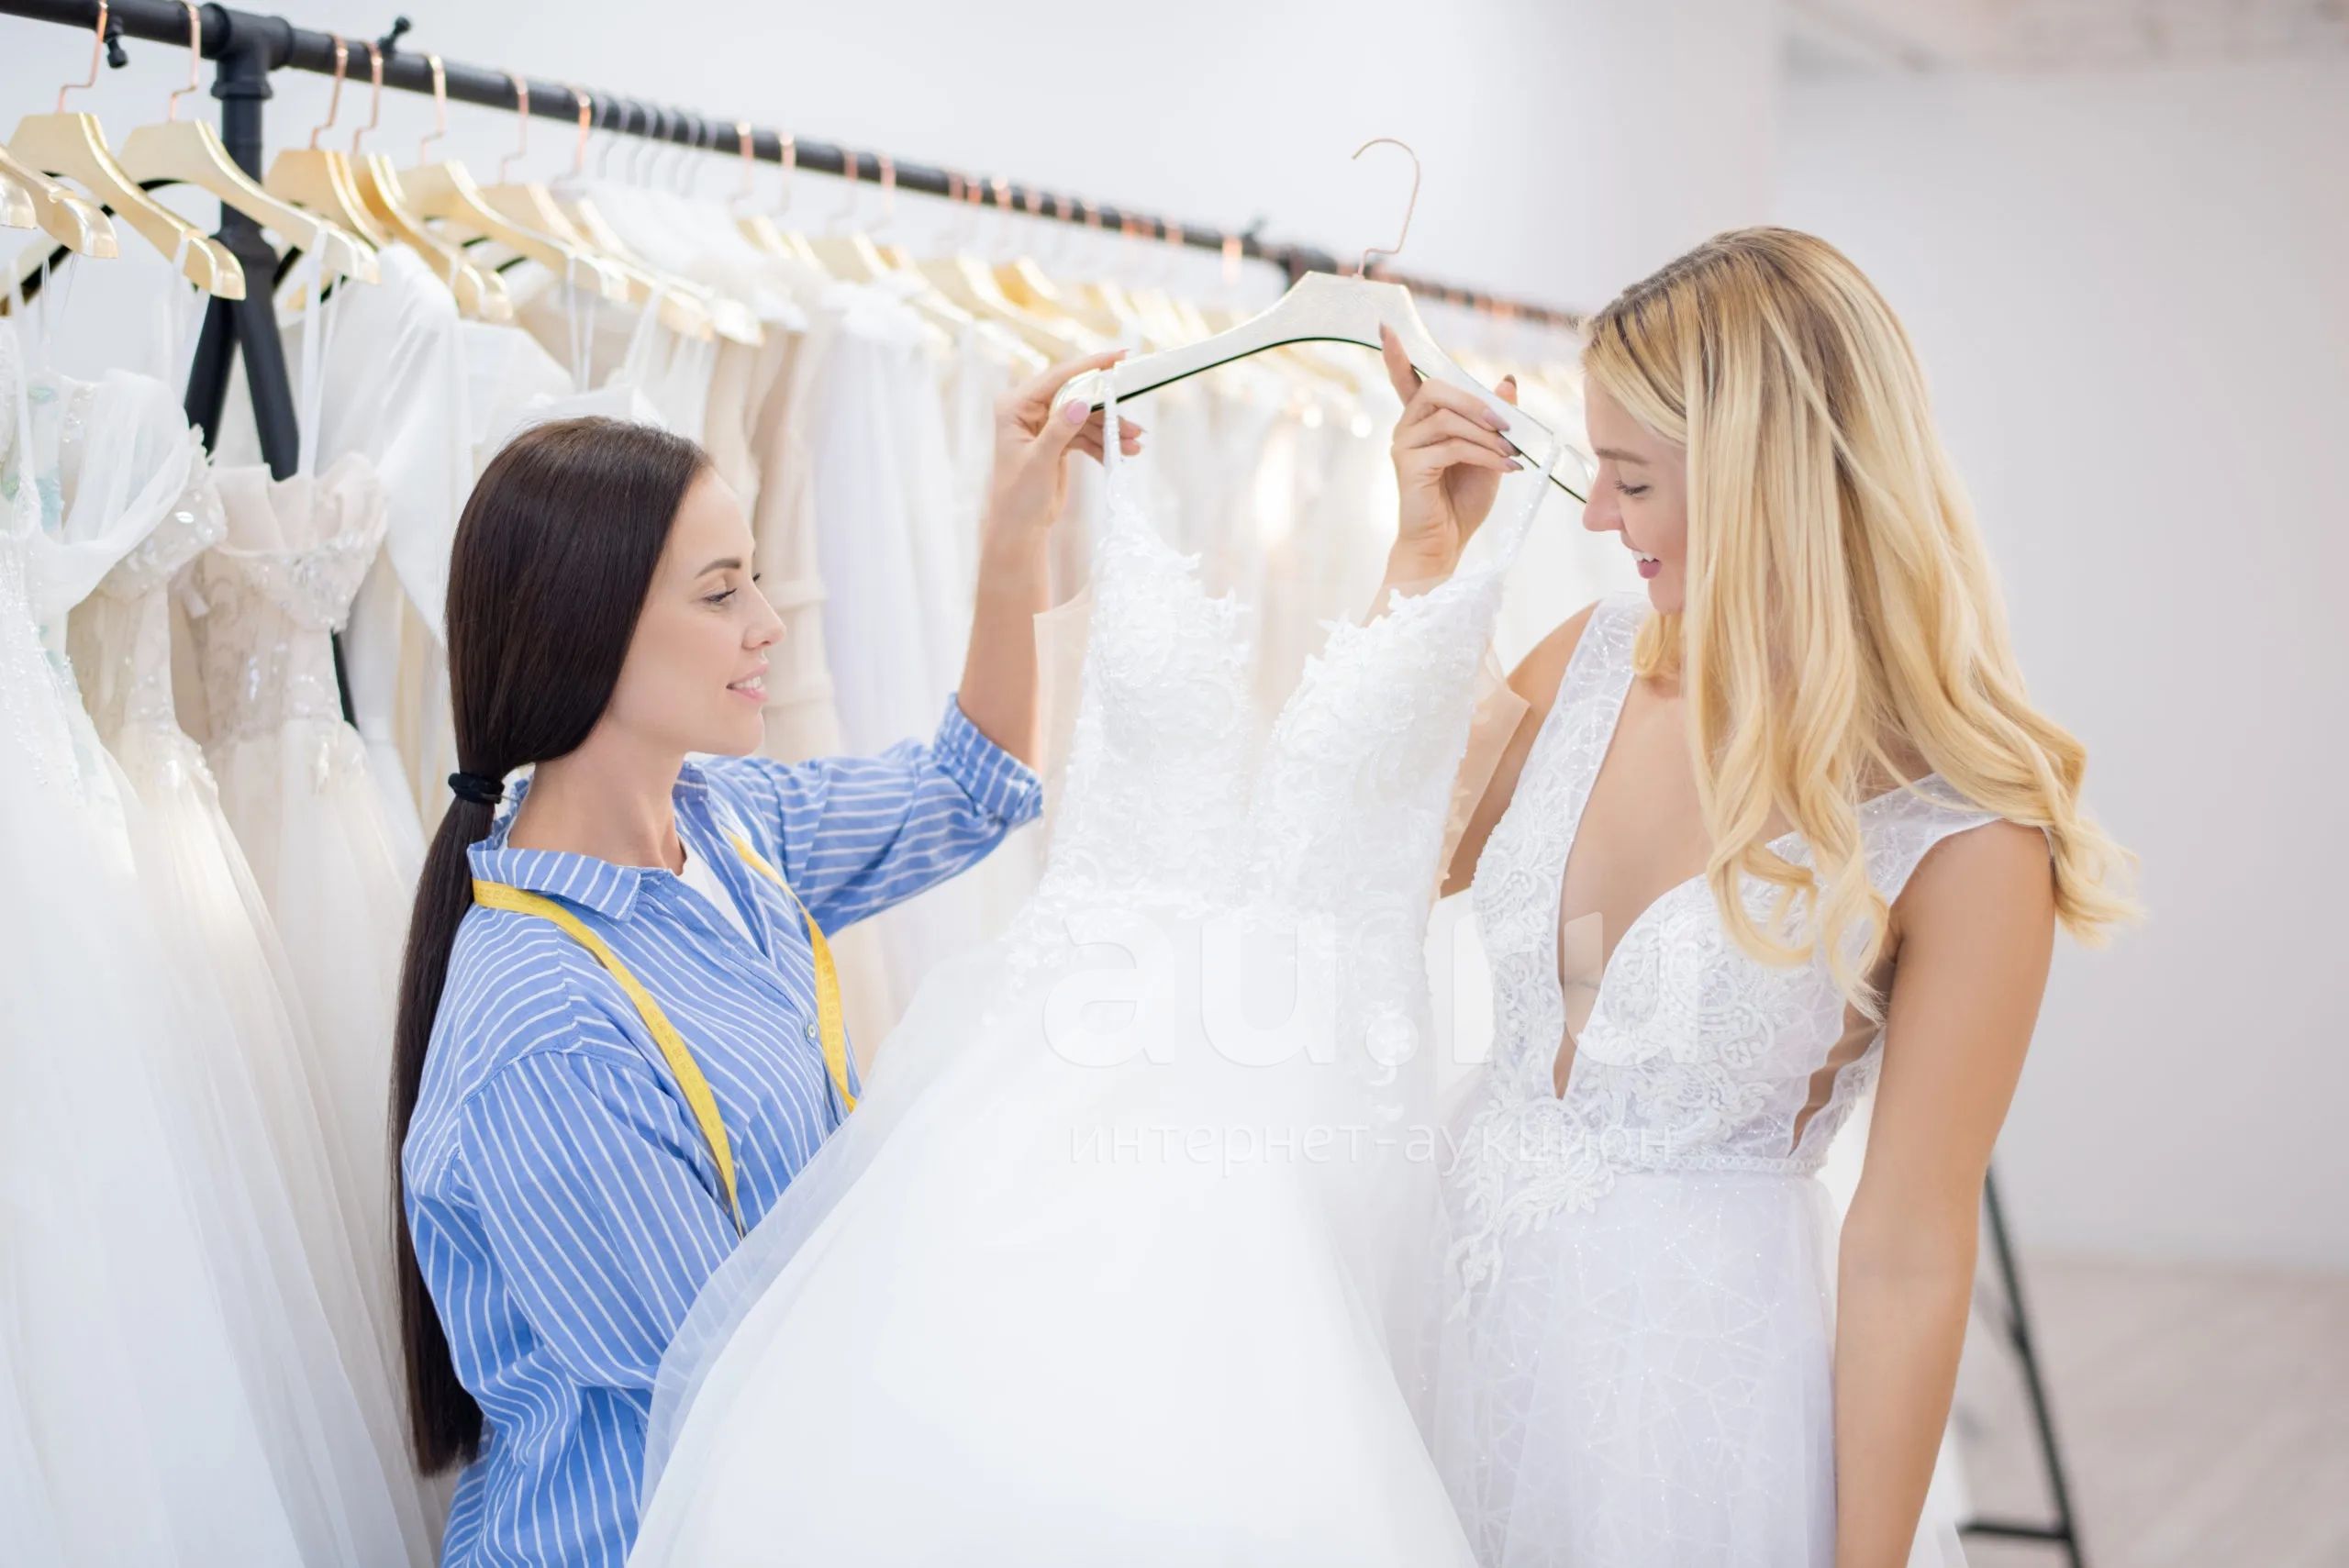 Купить платье примерка. Примерка свадебного платья. Примерить свадебное платье. Девушка в свадебном салоне. Примеряет свадебное платье.